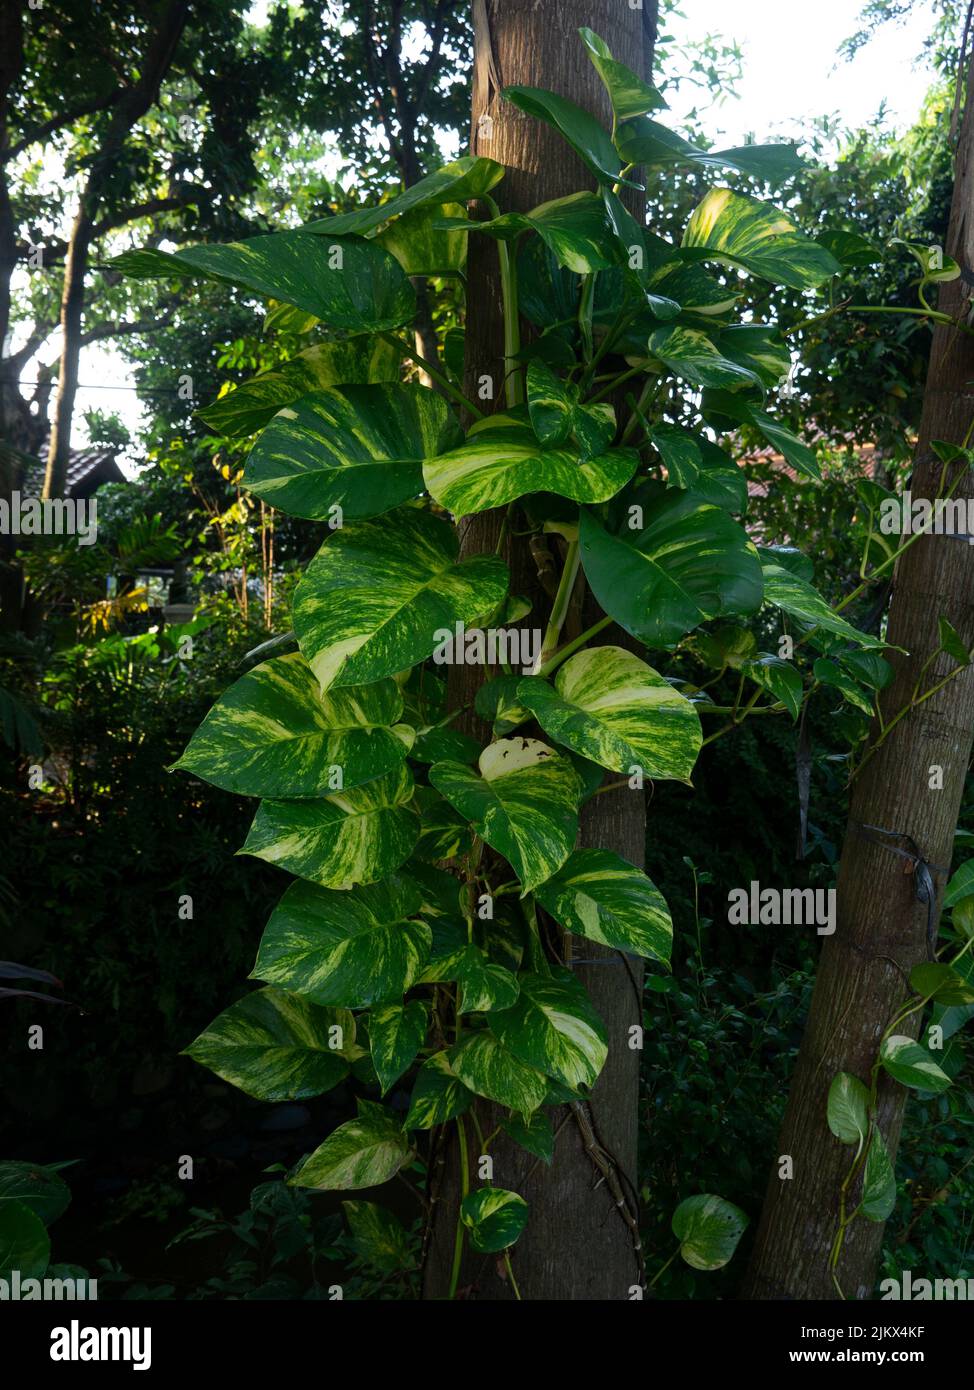 La pianta dell'edera del diavolo Epipremnum aureum è una specie della famiglia delle Arum Araceae, originaria di Mo'orea nelle Isole della Società Polinesiana francese. Foto Stock